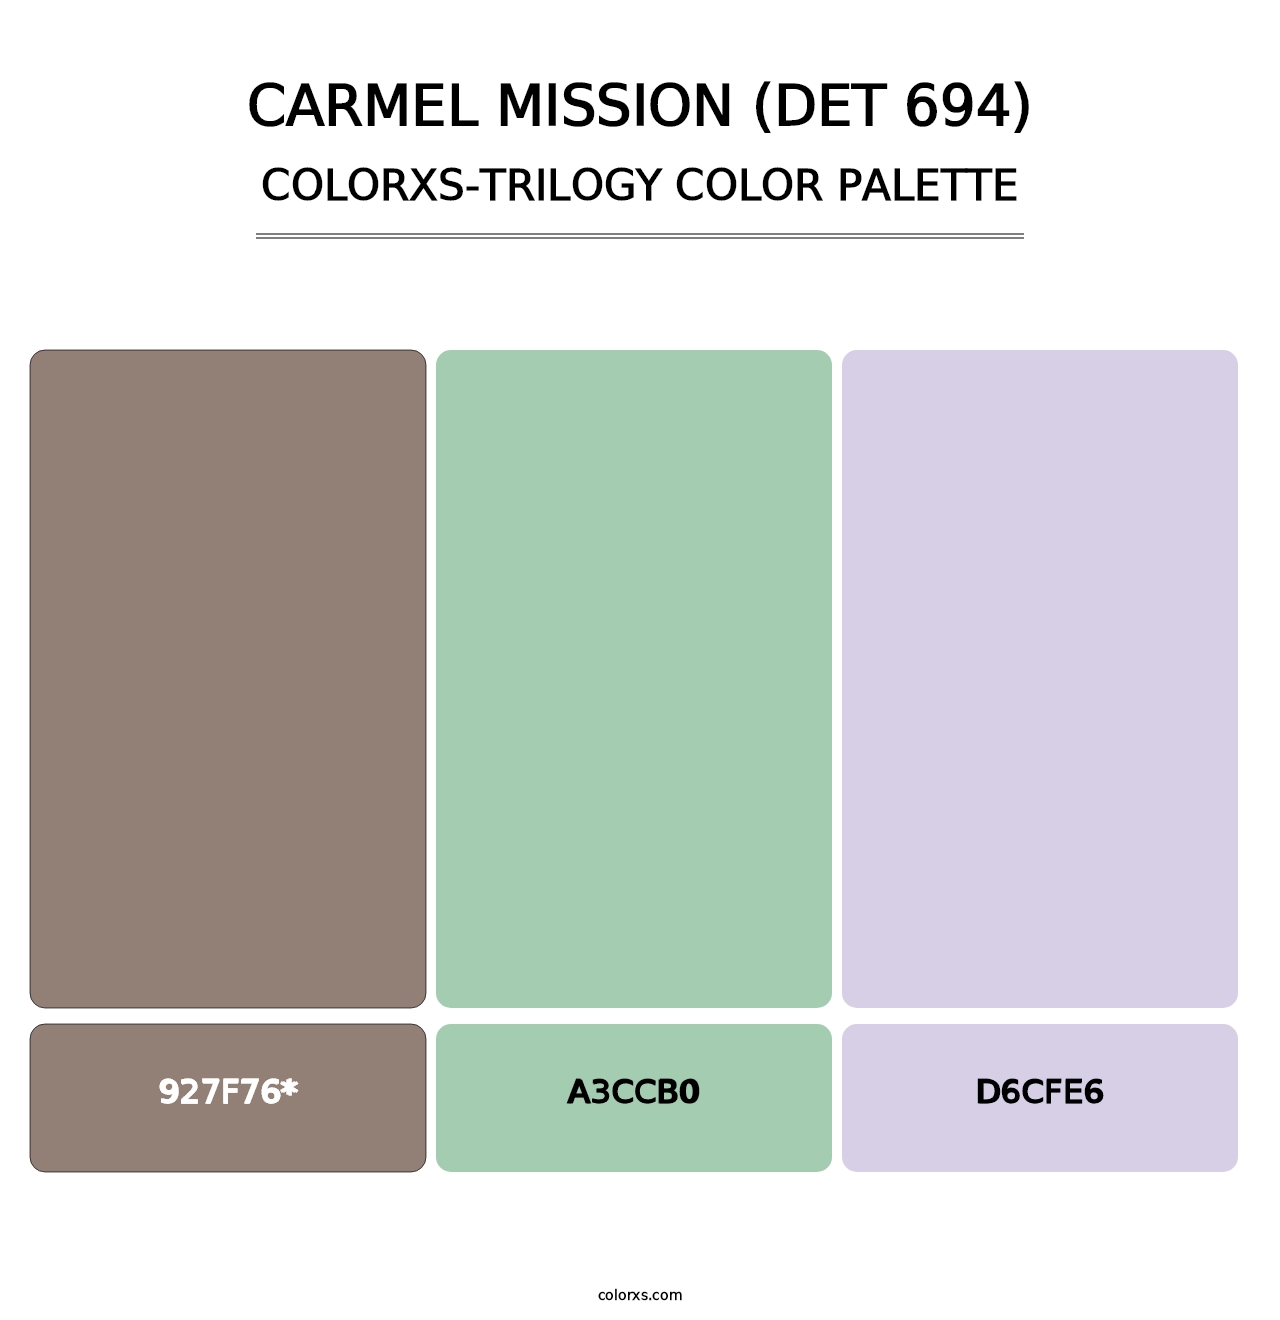 Carmel Mission (DET 694) - Colorxs Trilogy Palette